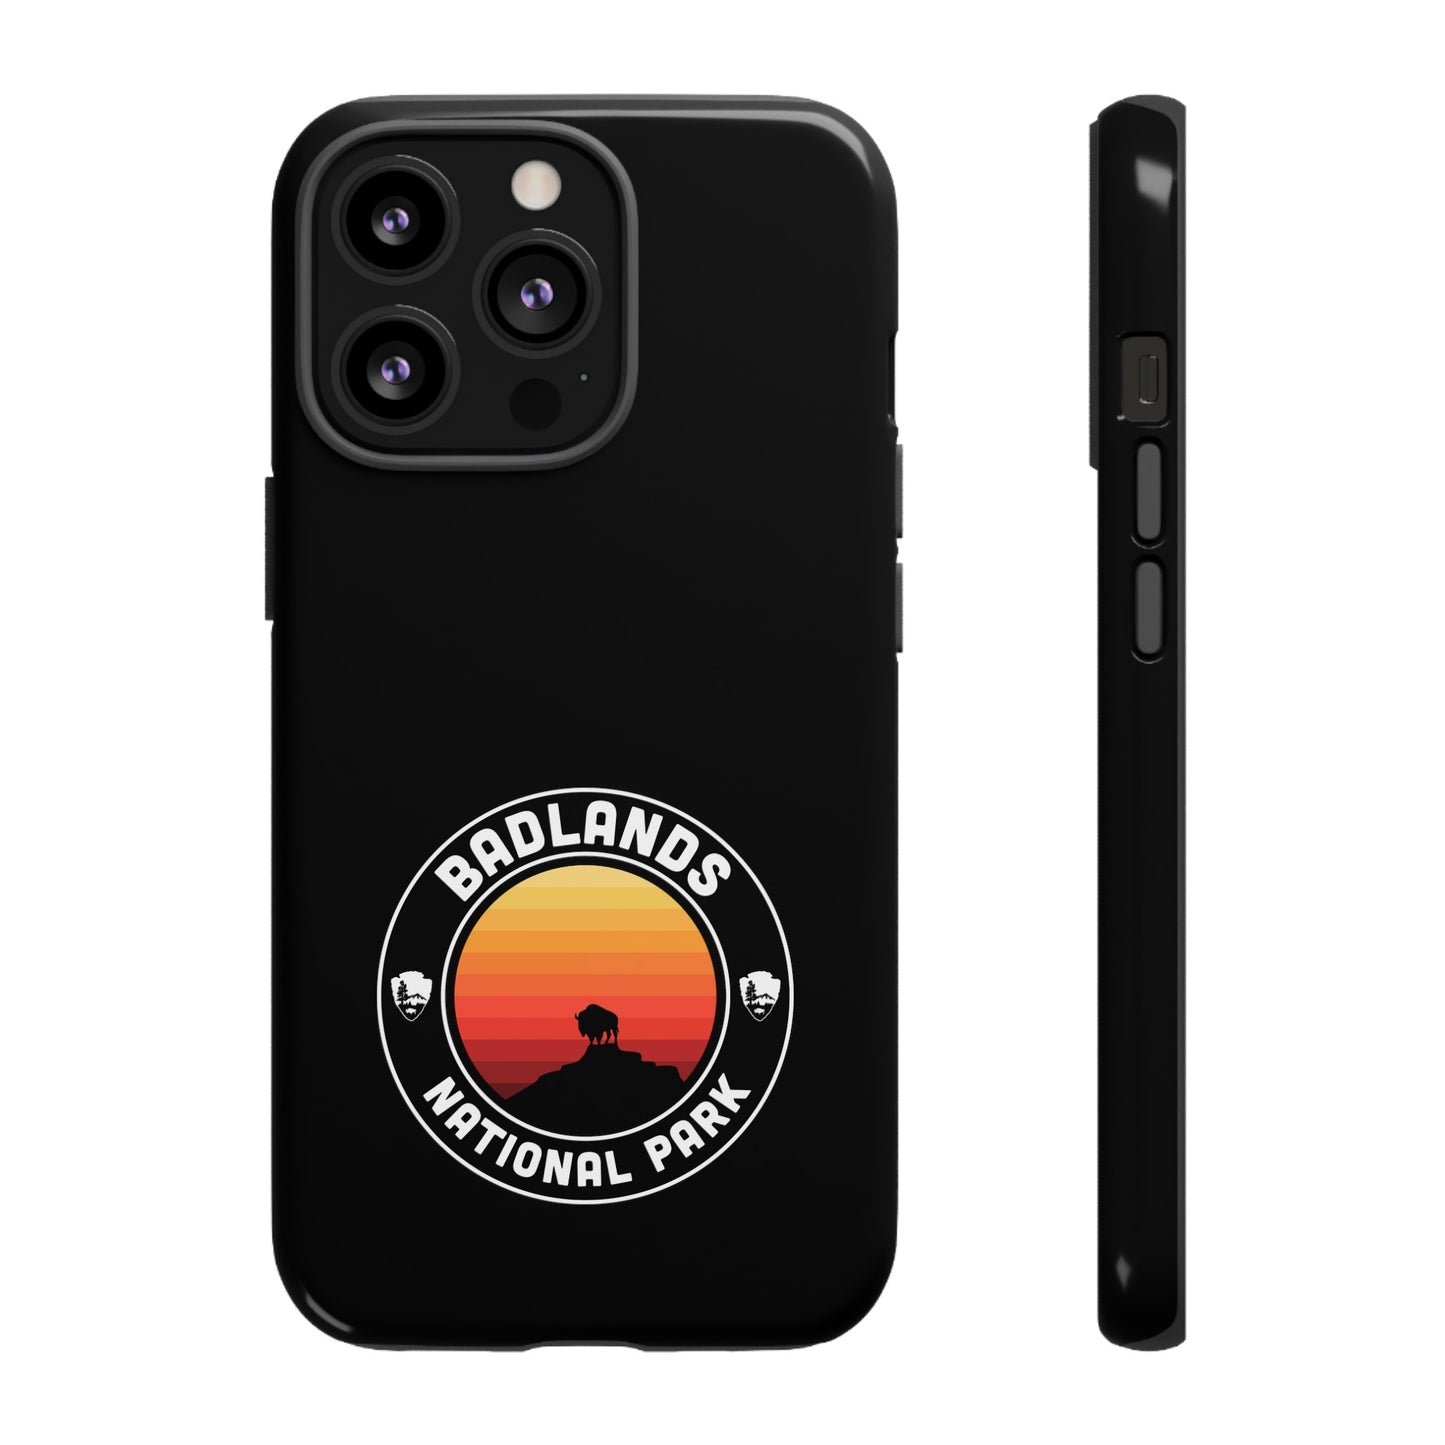 Badlands National Park Phone Case - Round Emblem Design